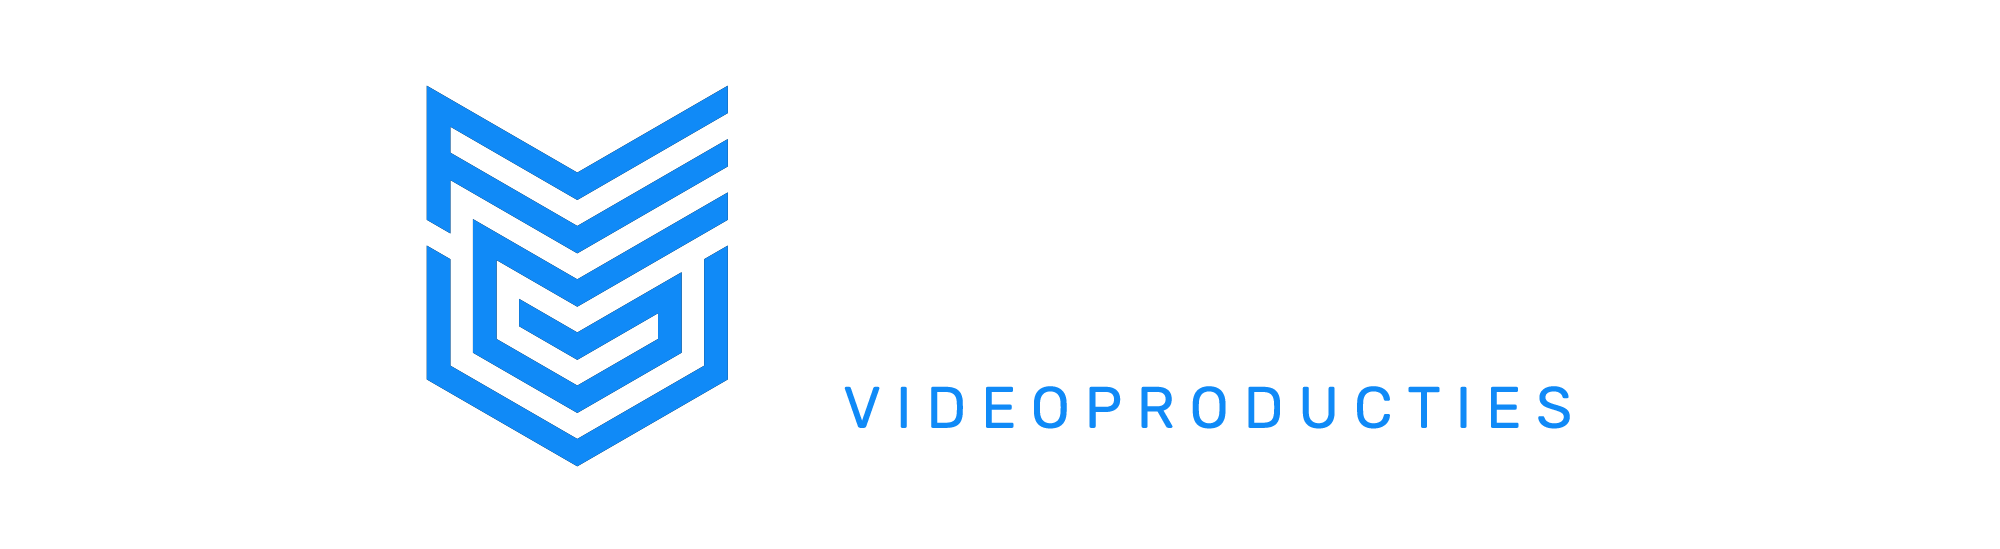 Frank van Garderen